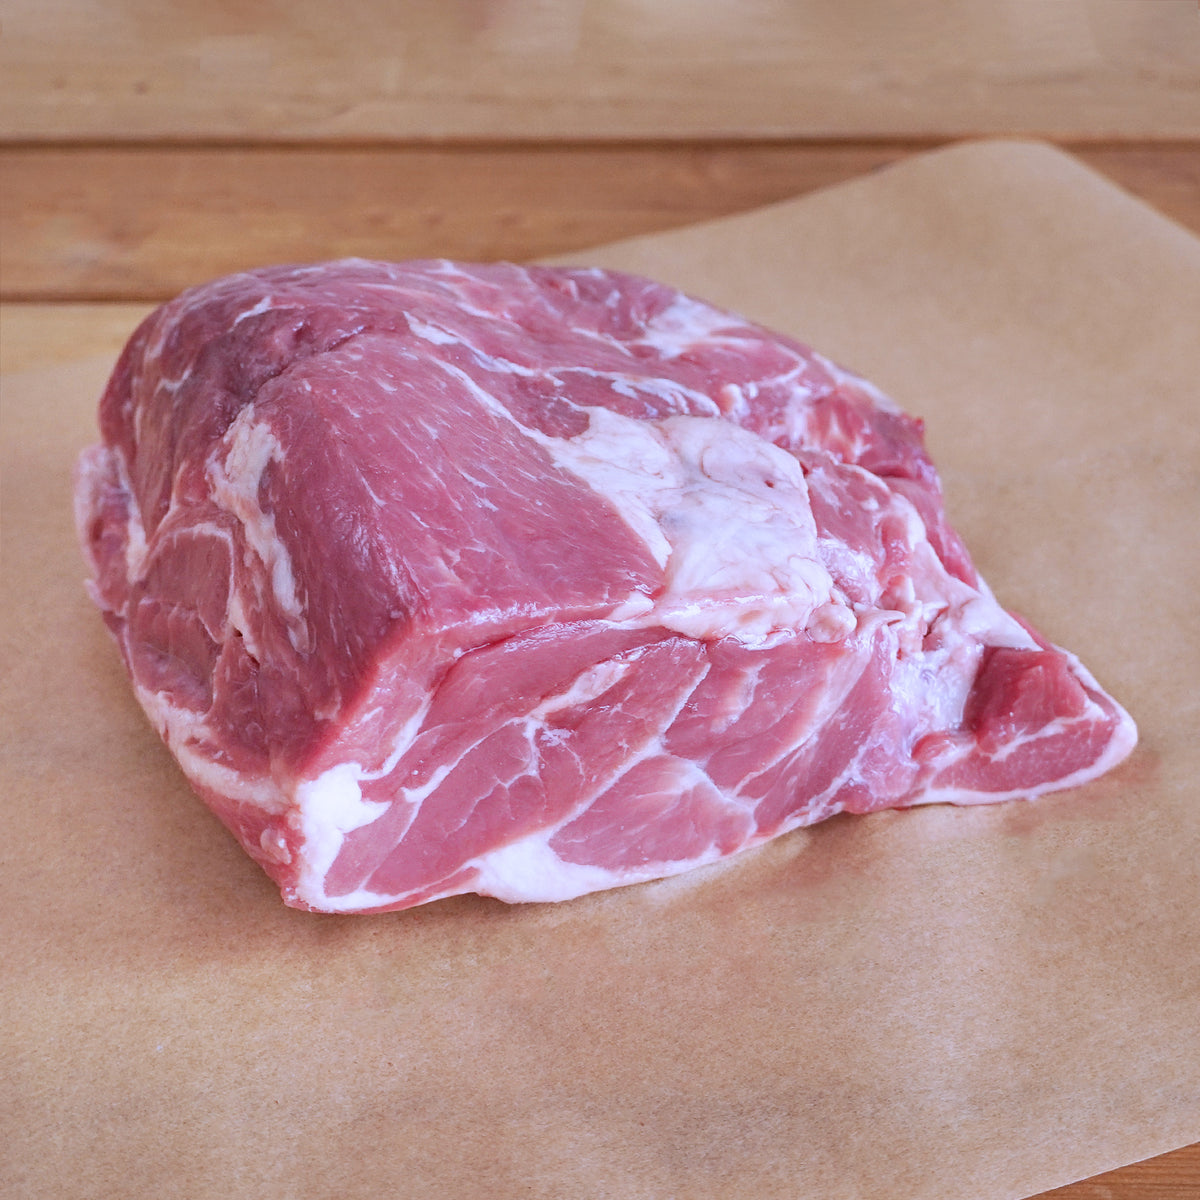 ニュージーランド産 ラム肉 ラムショルダー 肩肉 (1kg) ホライズンファームズ